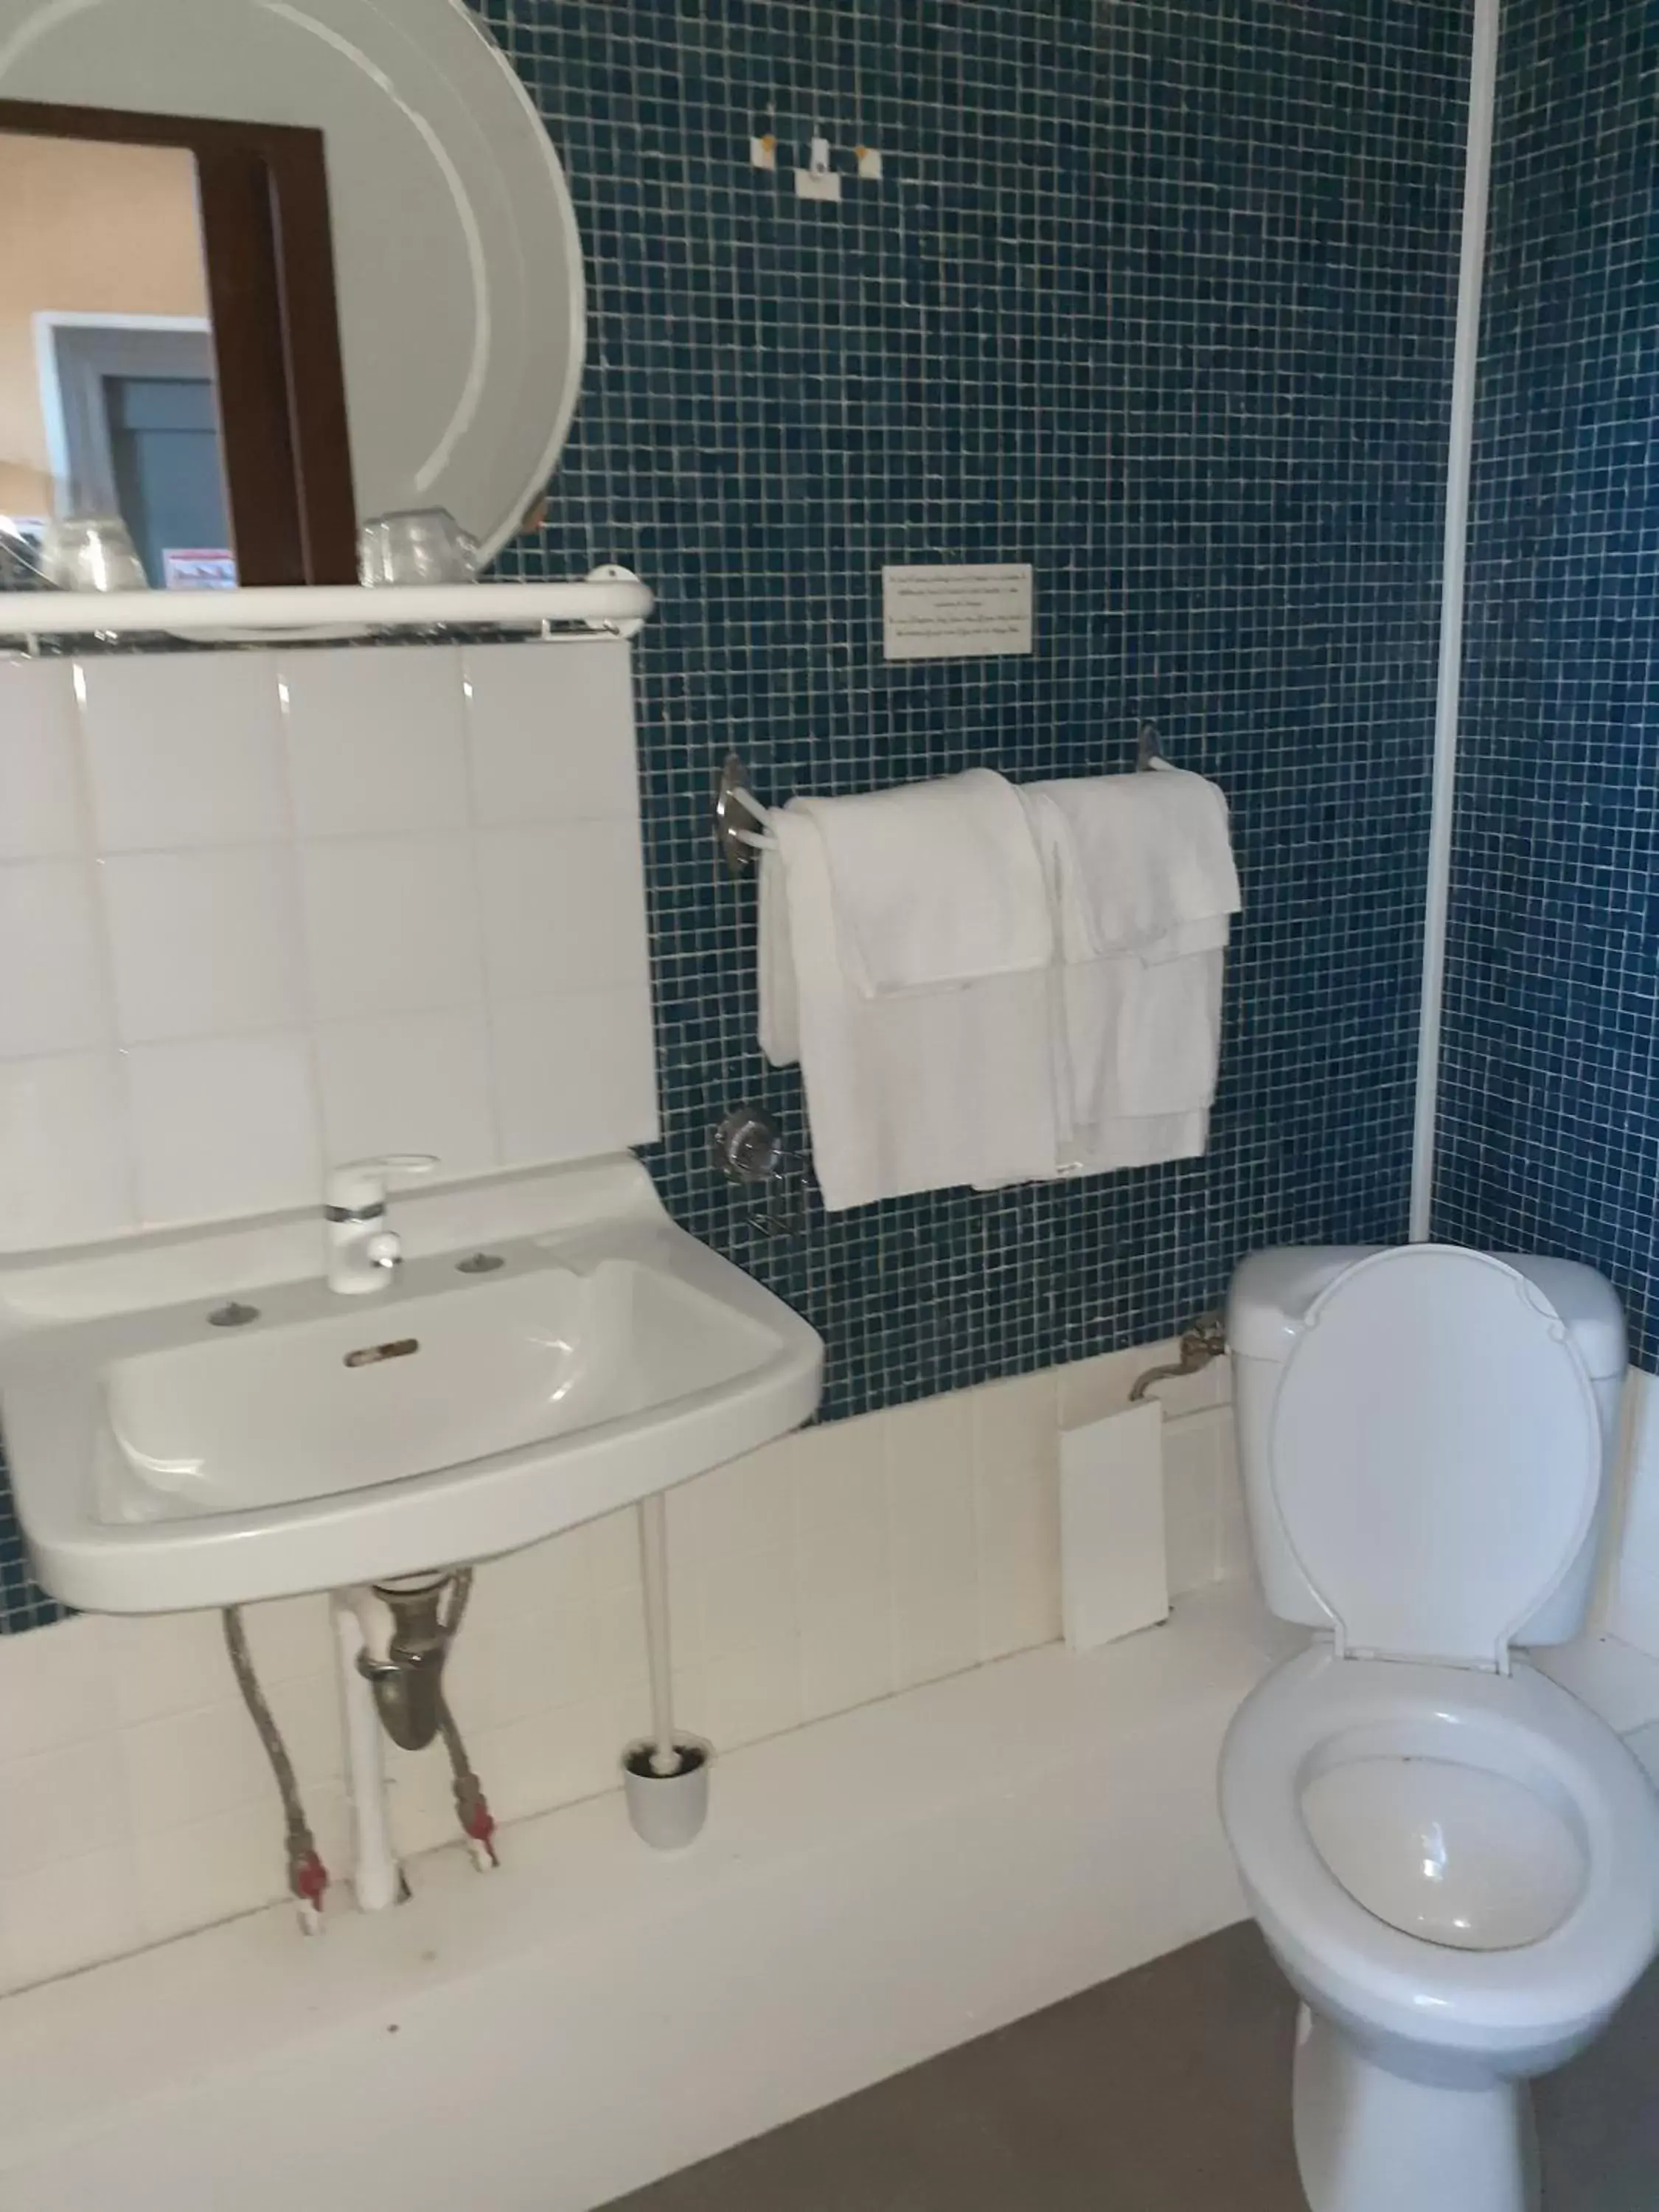 Bathroom in Hotel du chateau blanc